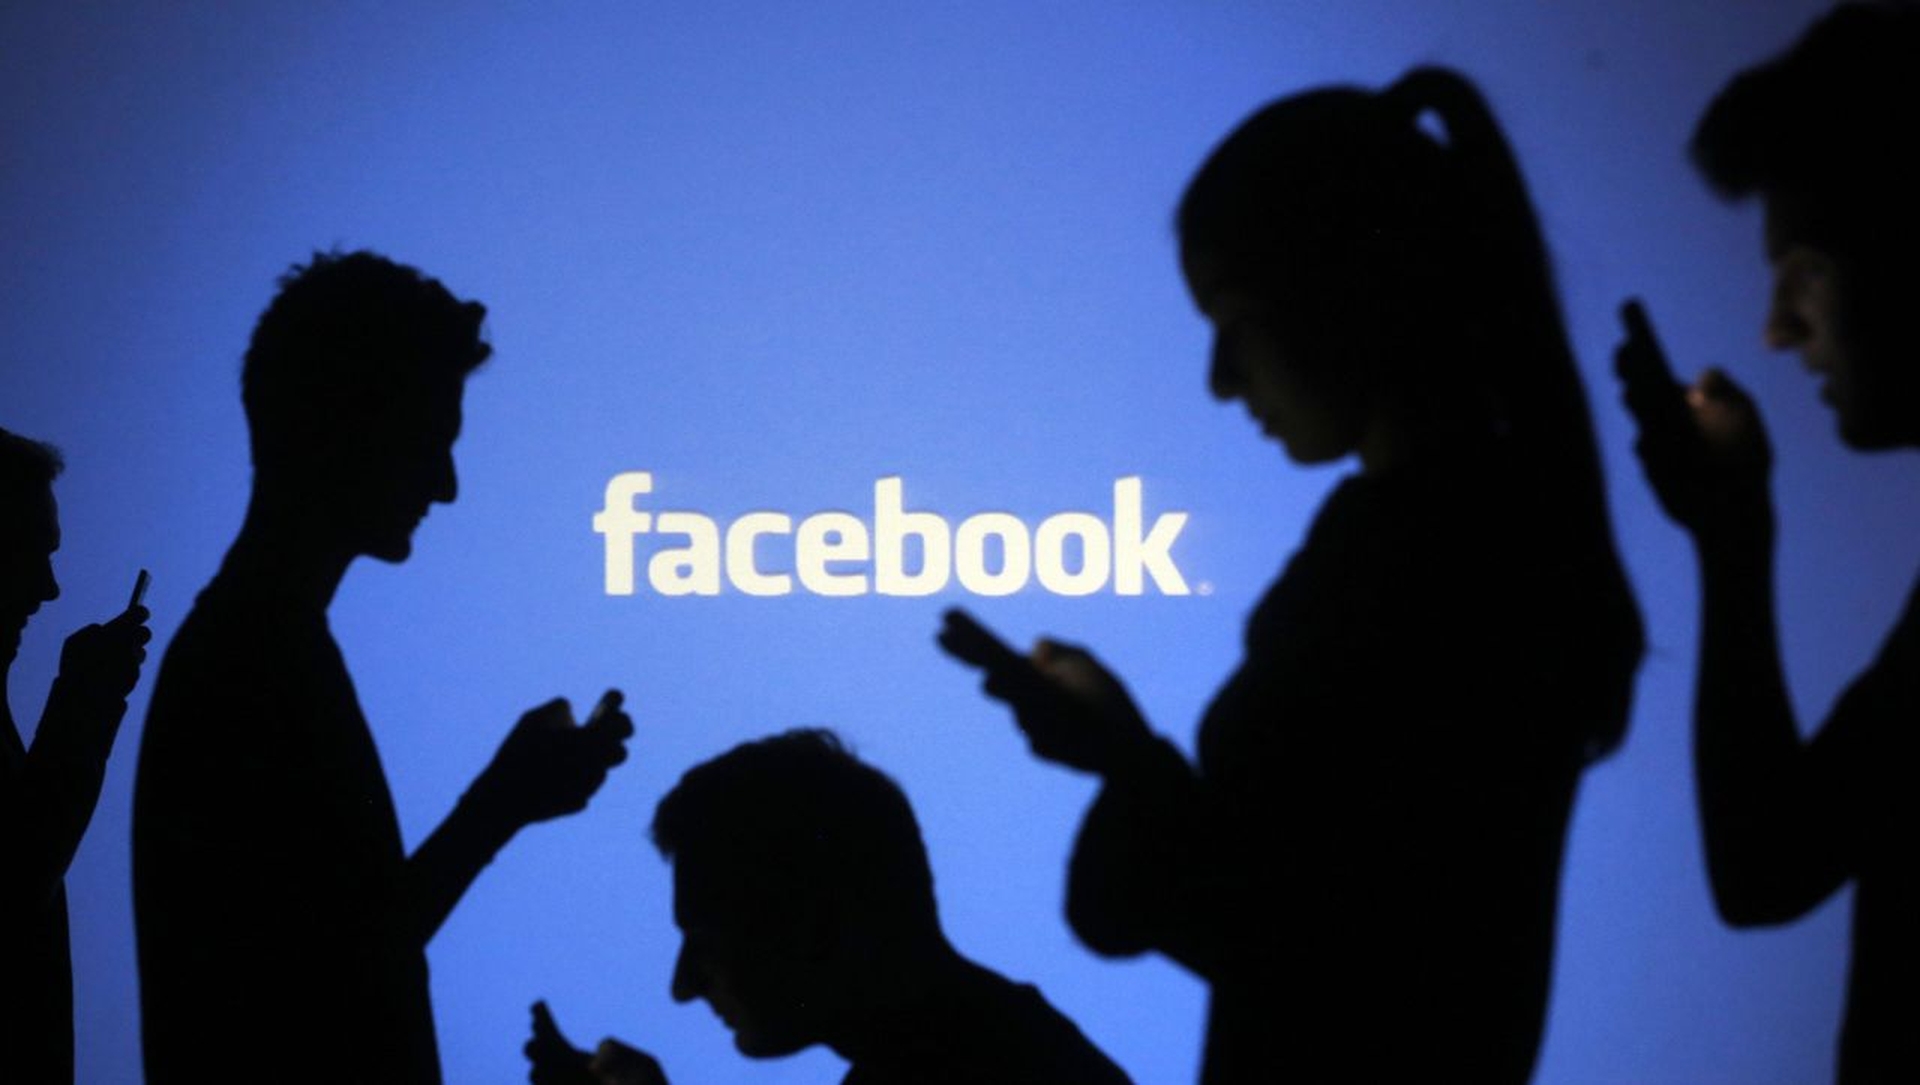 In dit artikel gaan we in op hoe je Facebook-berichten zichtbaar kunt maken, zodat je berichten op Facebook zichtbaar kunt maken die je een tijdje geleden hebt verwijderd.